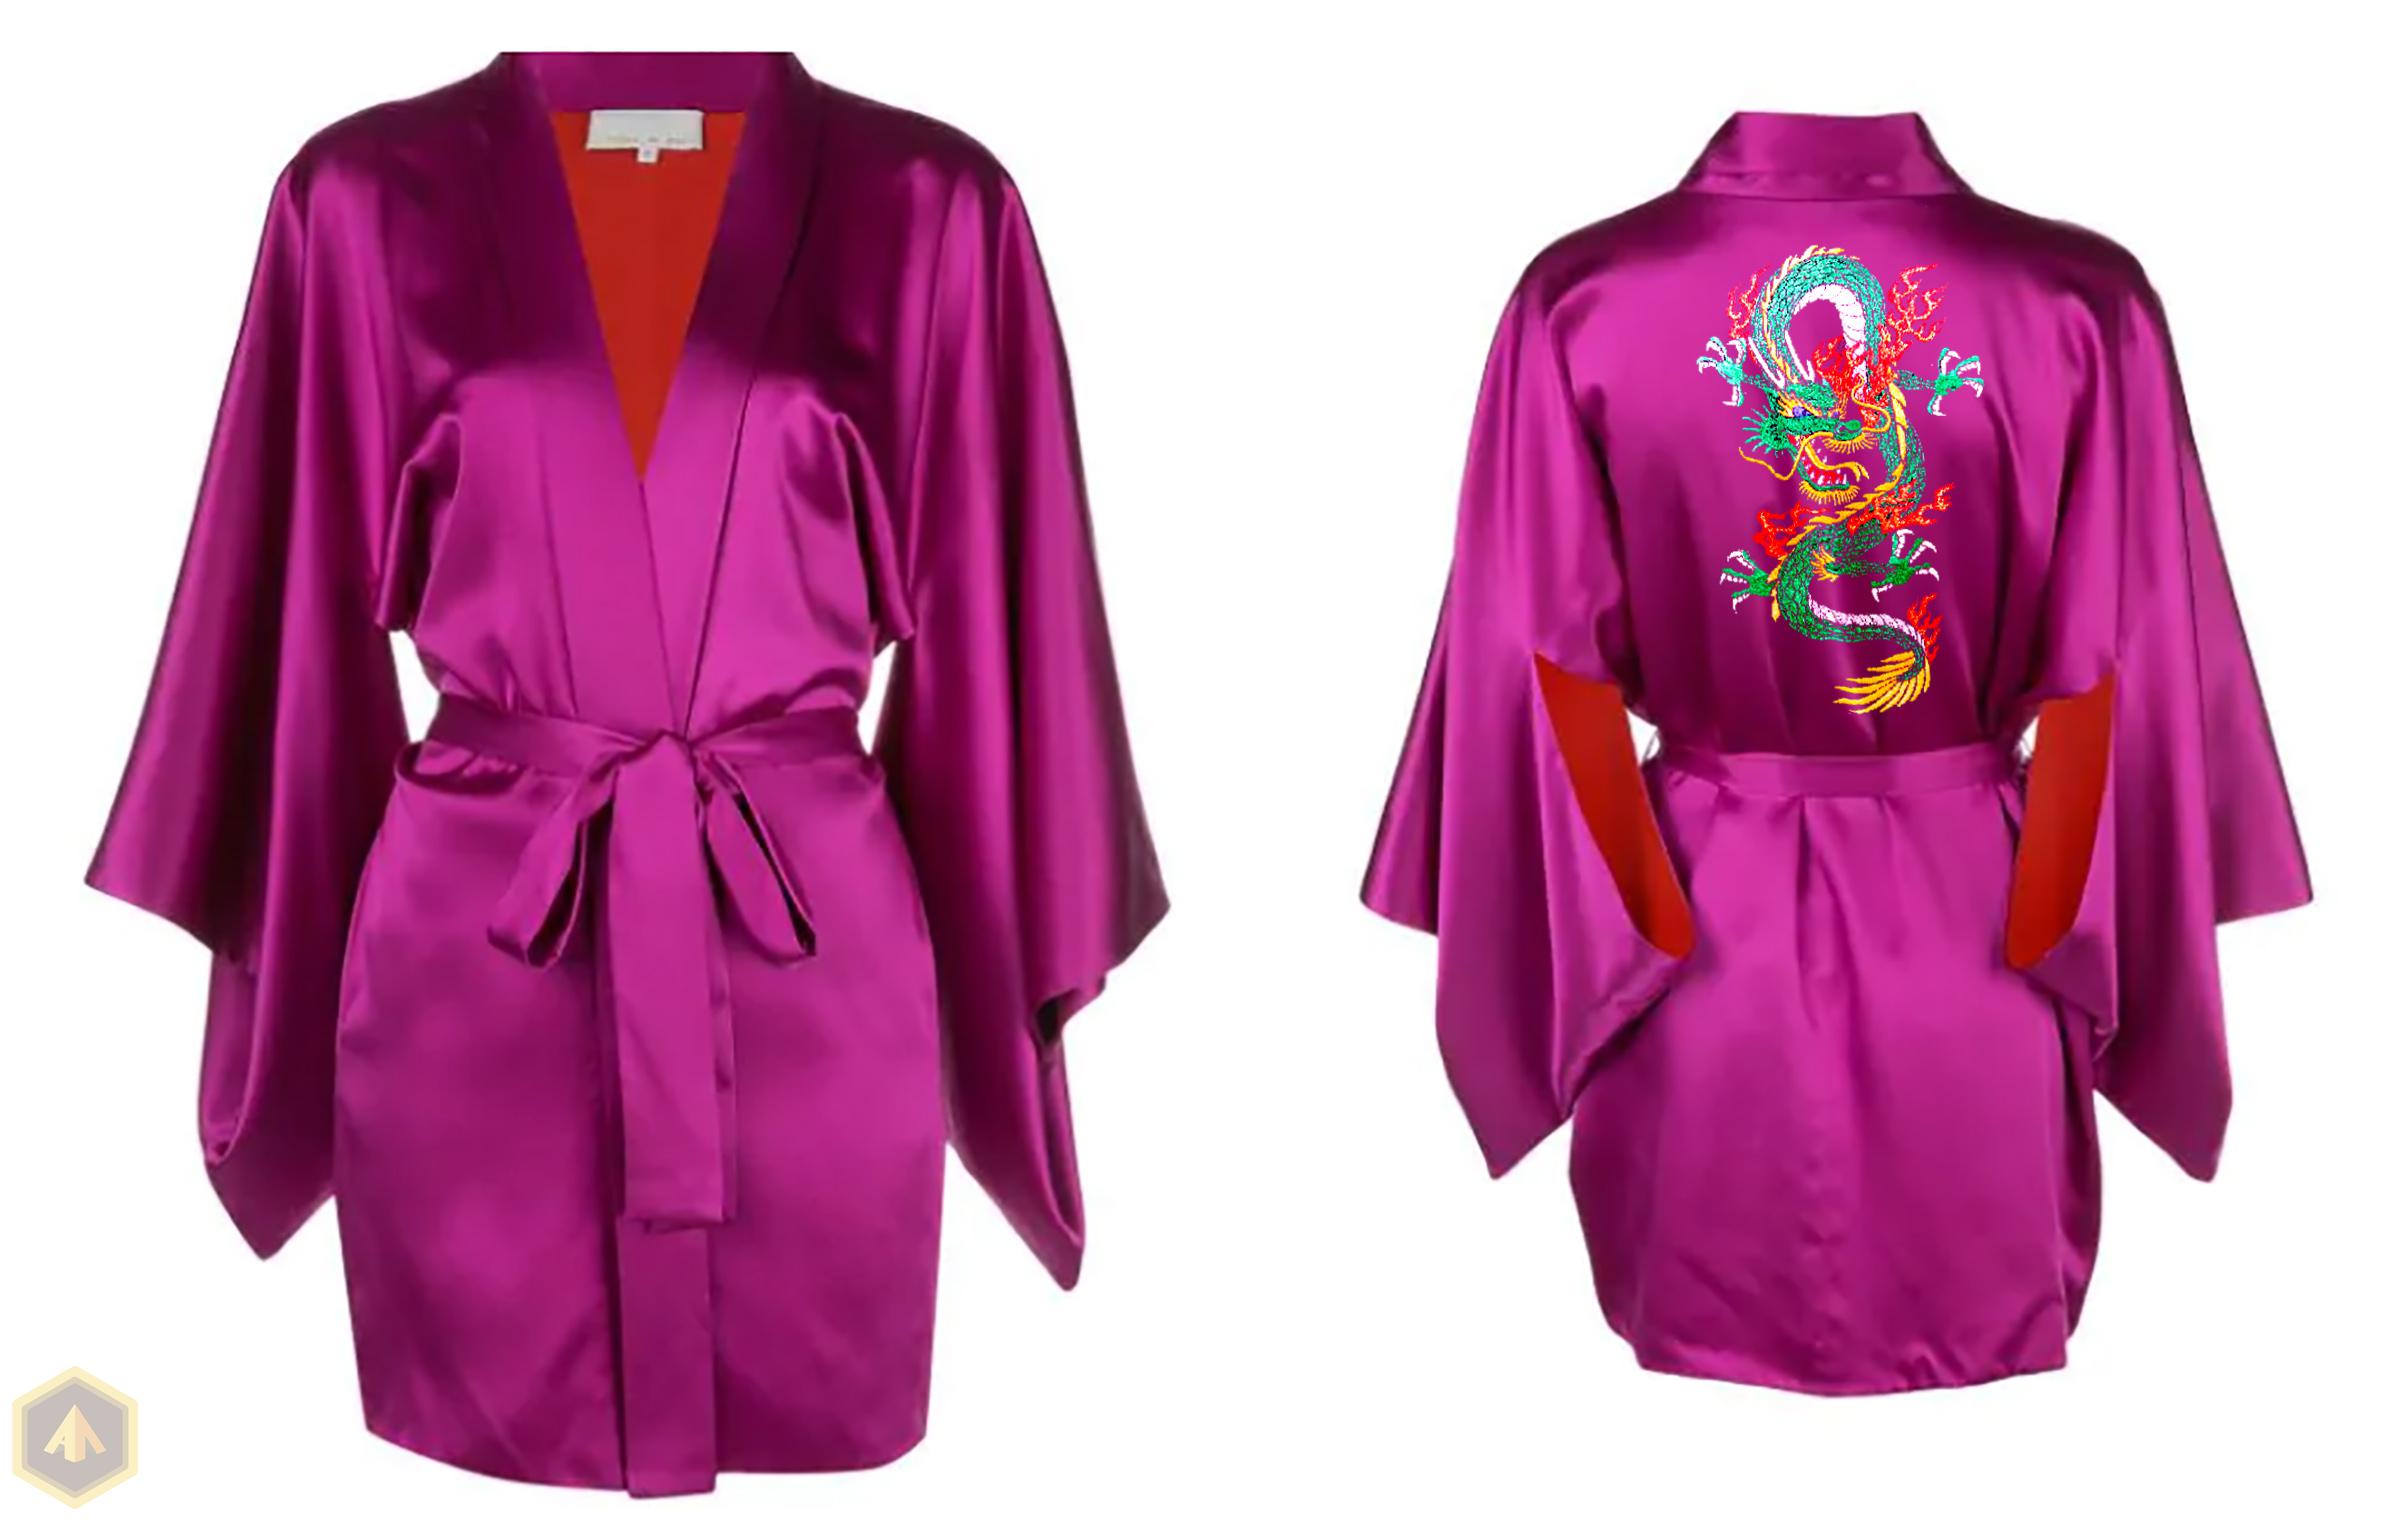 1.кимоно сиреневое с драконом